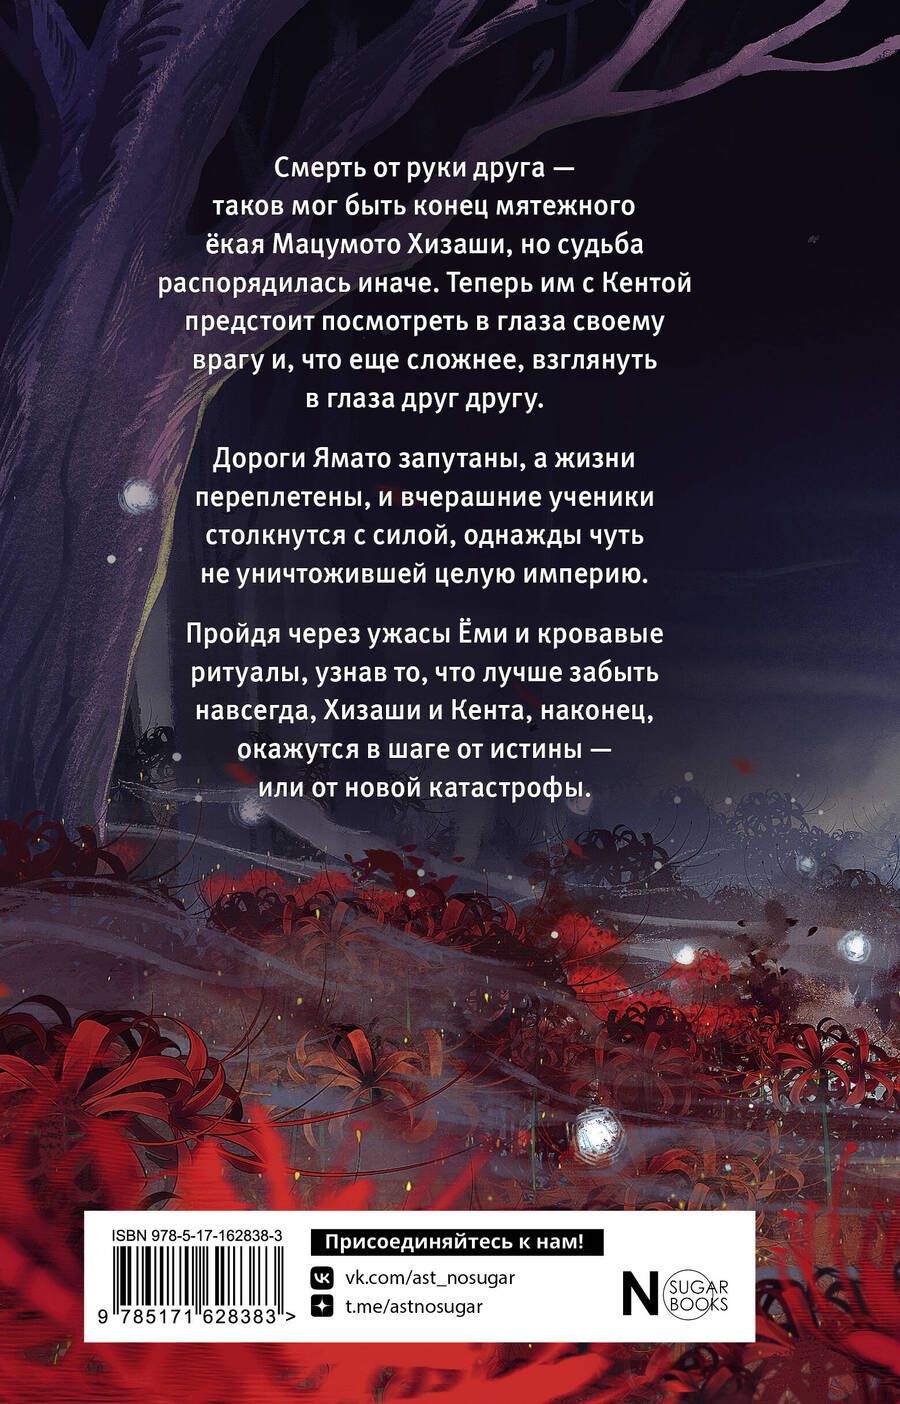 Обложка книги "Наумова, Дубинина: Серебряный змей в корнях сосны - 3"